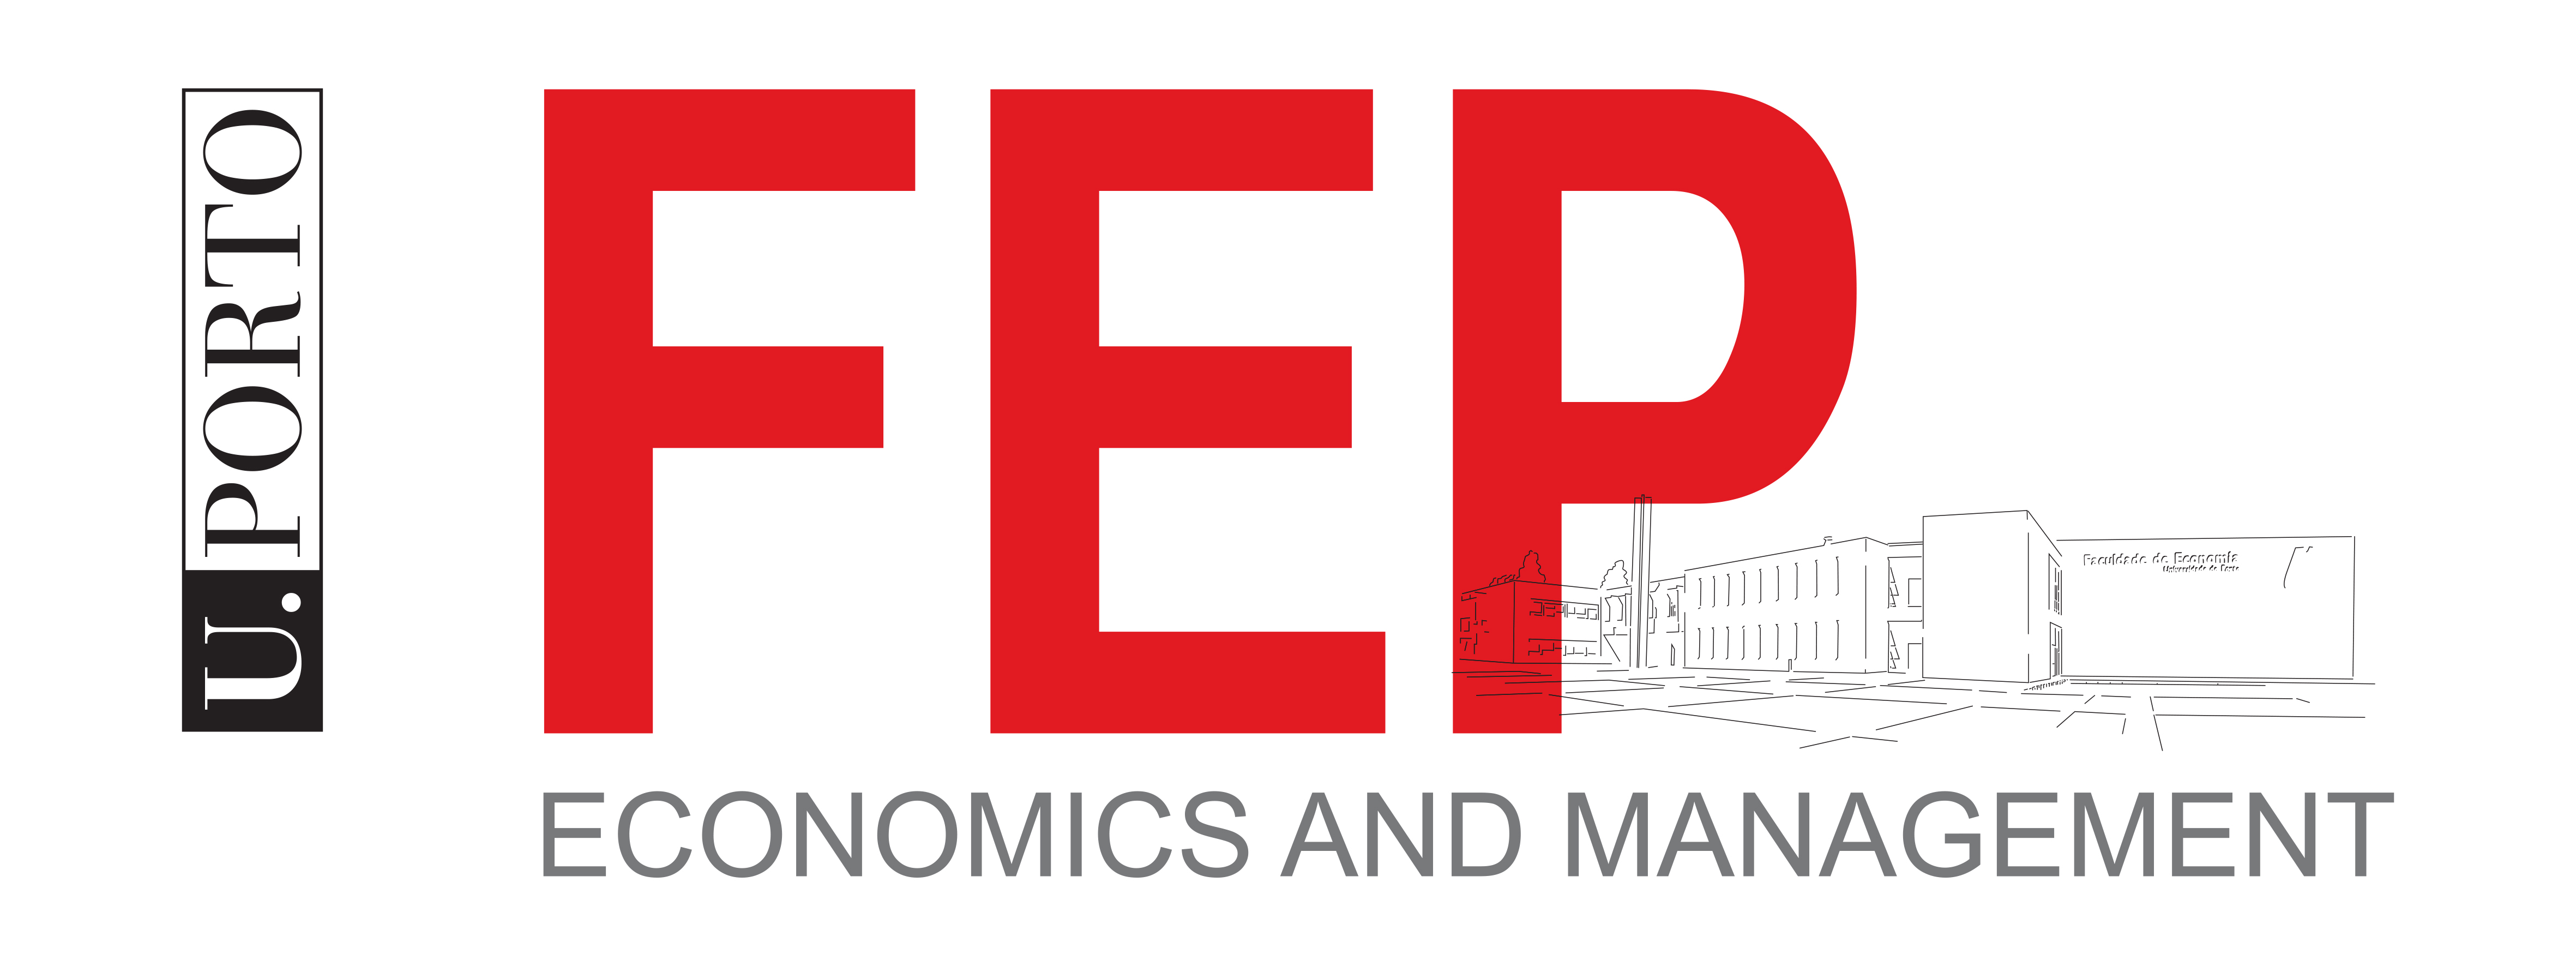 Logo Faculdade de Economia da Universidade do Porto - School of Economics and Management, University of Porto